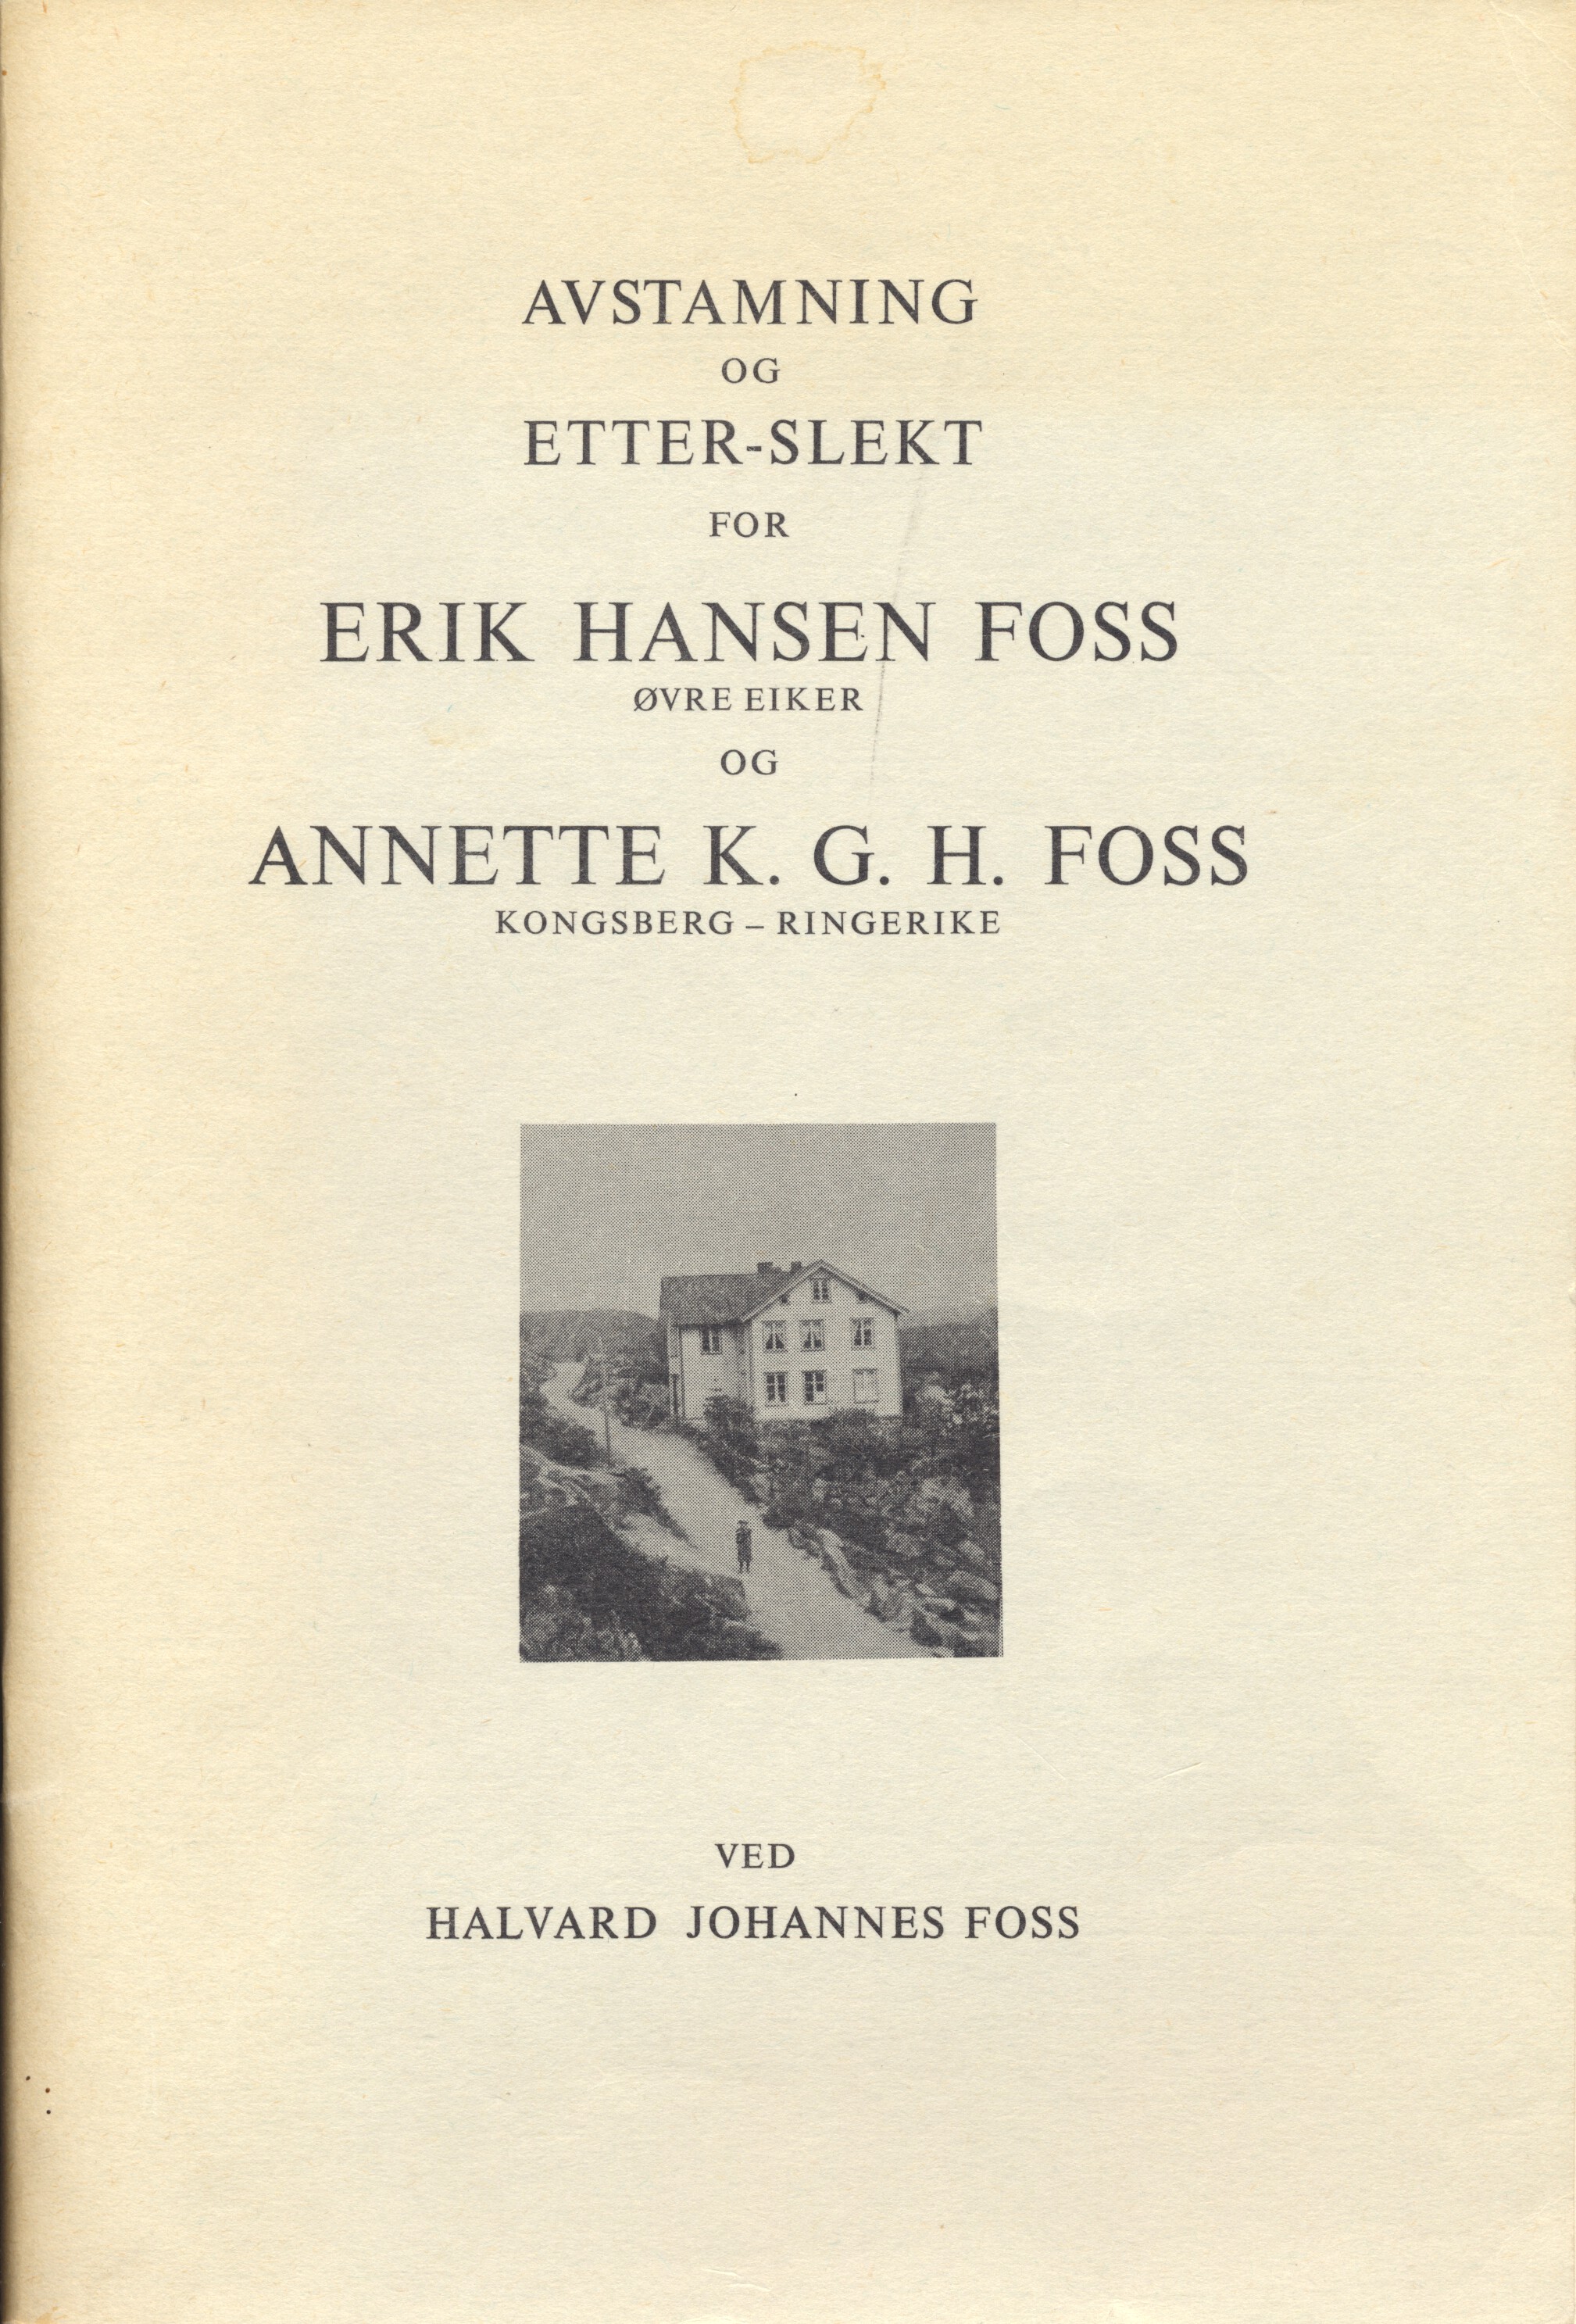 Avstamning og Etterslekt for Erik Hansen Foss (Øvre Eiker) og Annette K.G.H. Foss (Kongsberg-Ringerike) ved Halvard Johannes Foss.pdf